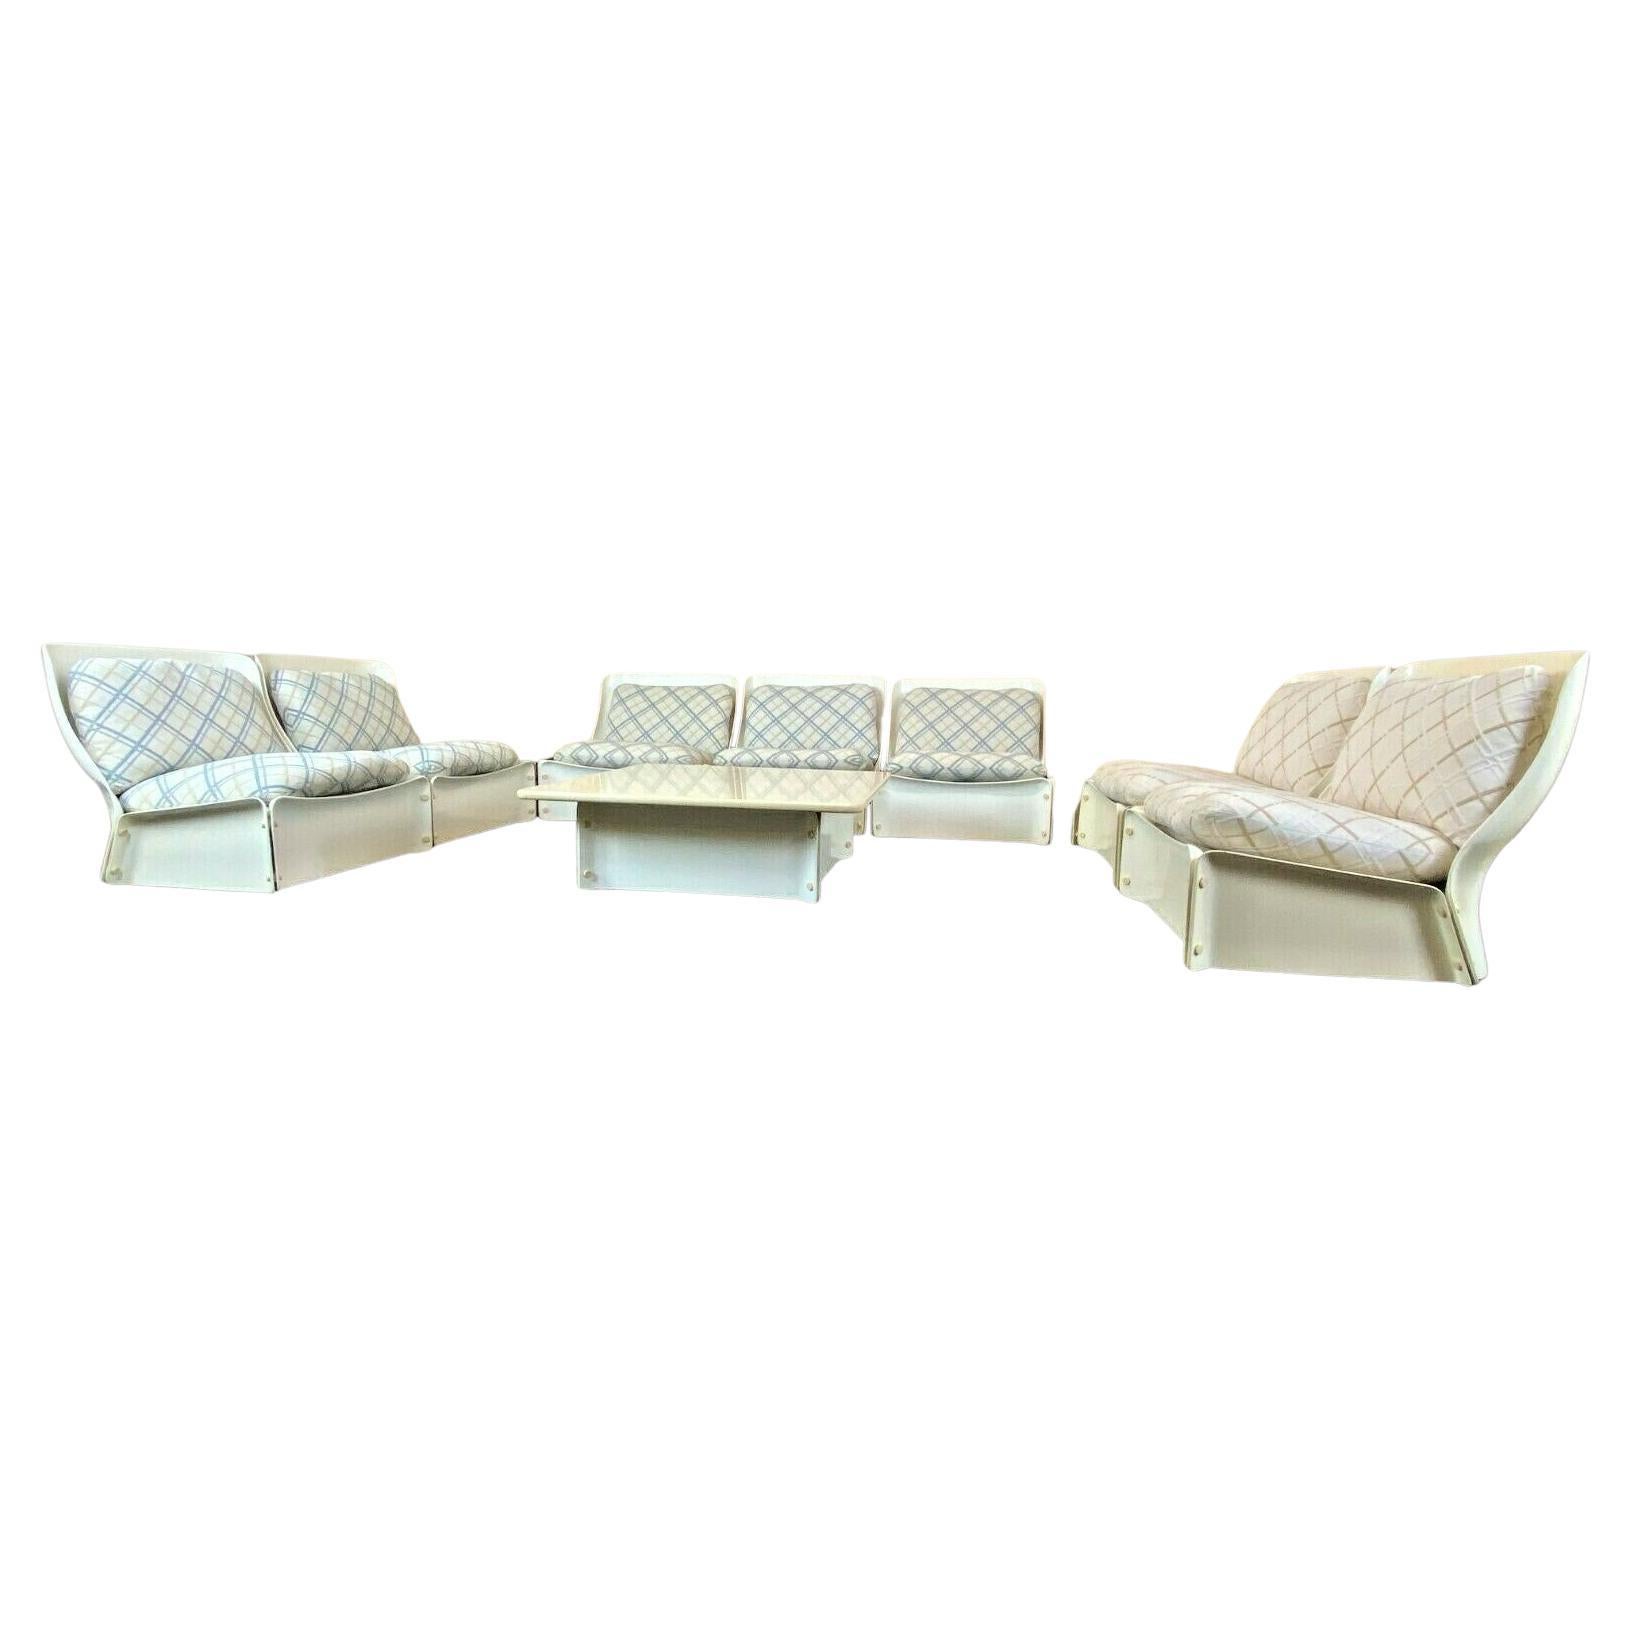 Rare canapé modulaire Module Couch Design Fiberglas Space Age 60er 70er Jahre (années 1960)